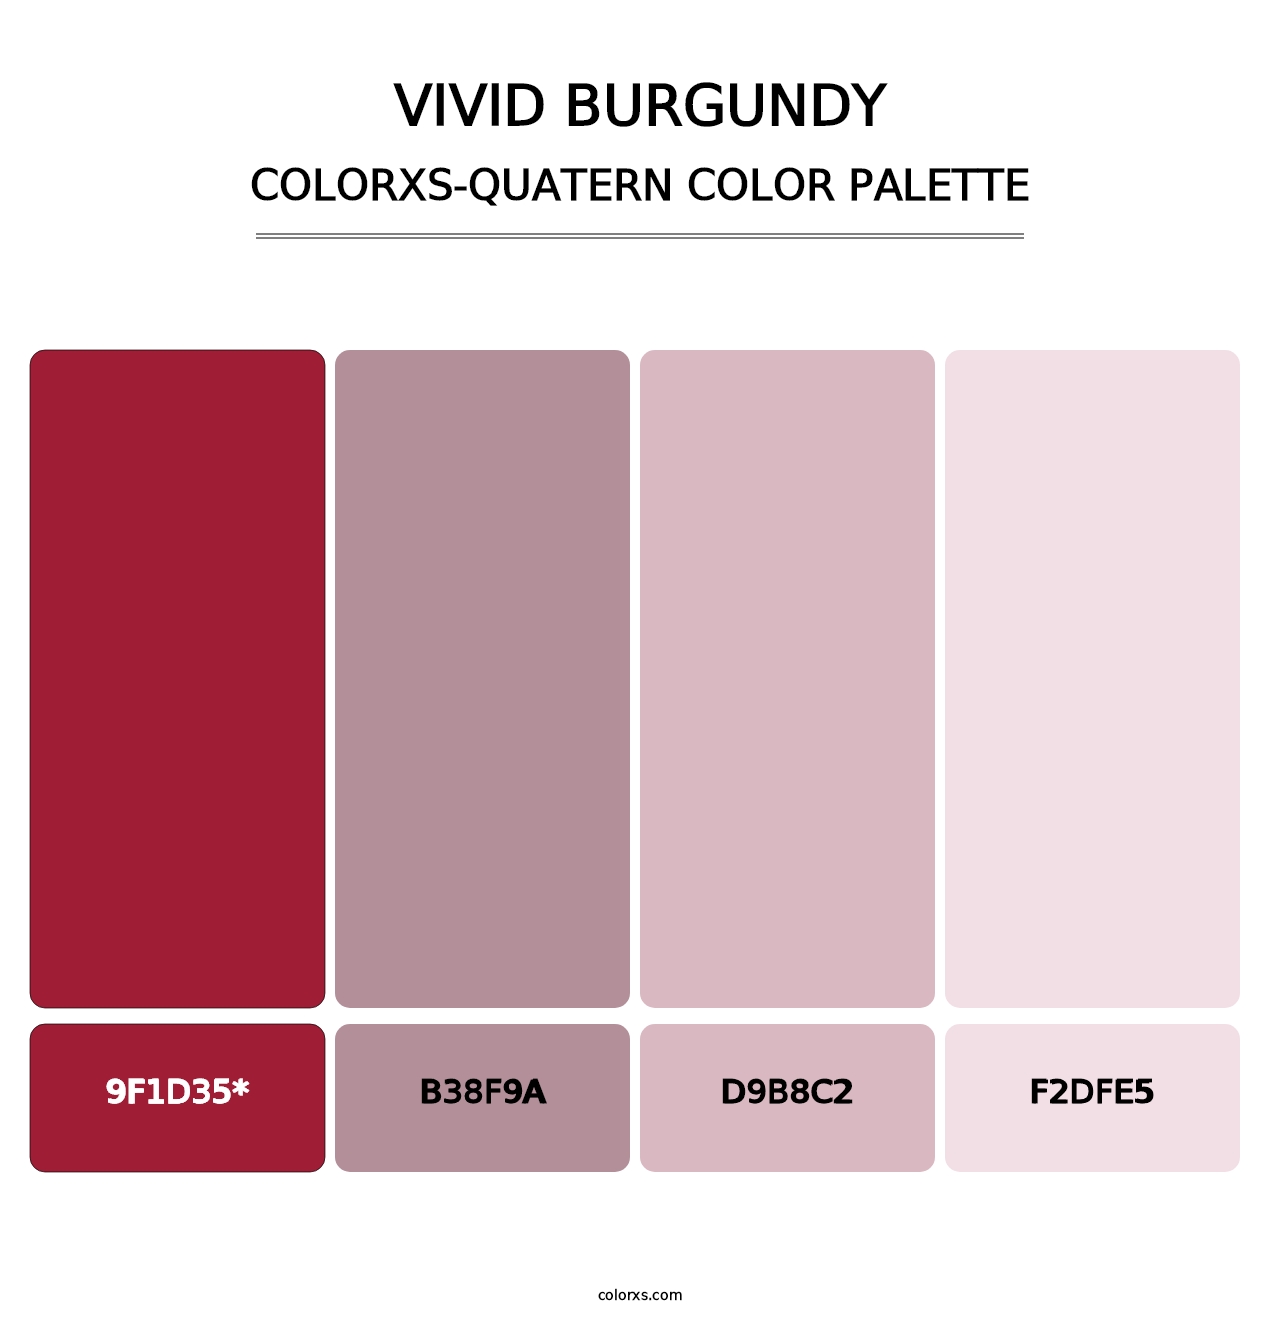 Vivid Burgundy - Colorxs Quatern Palette